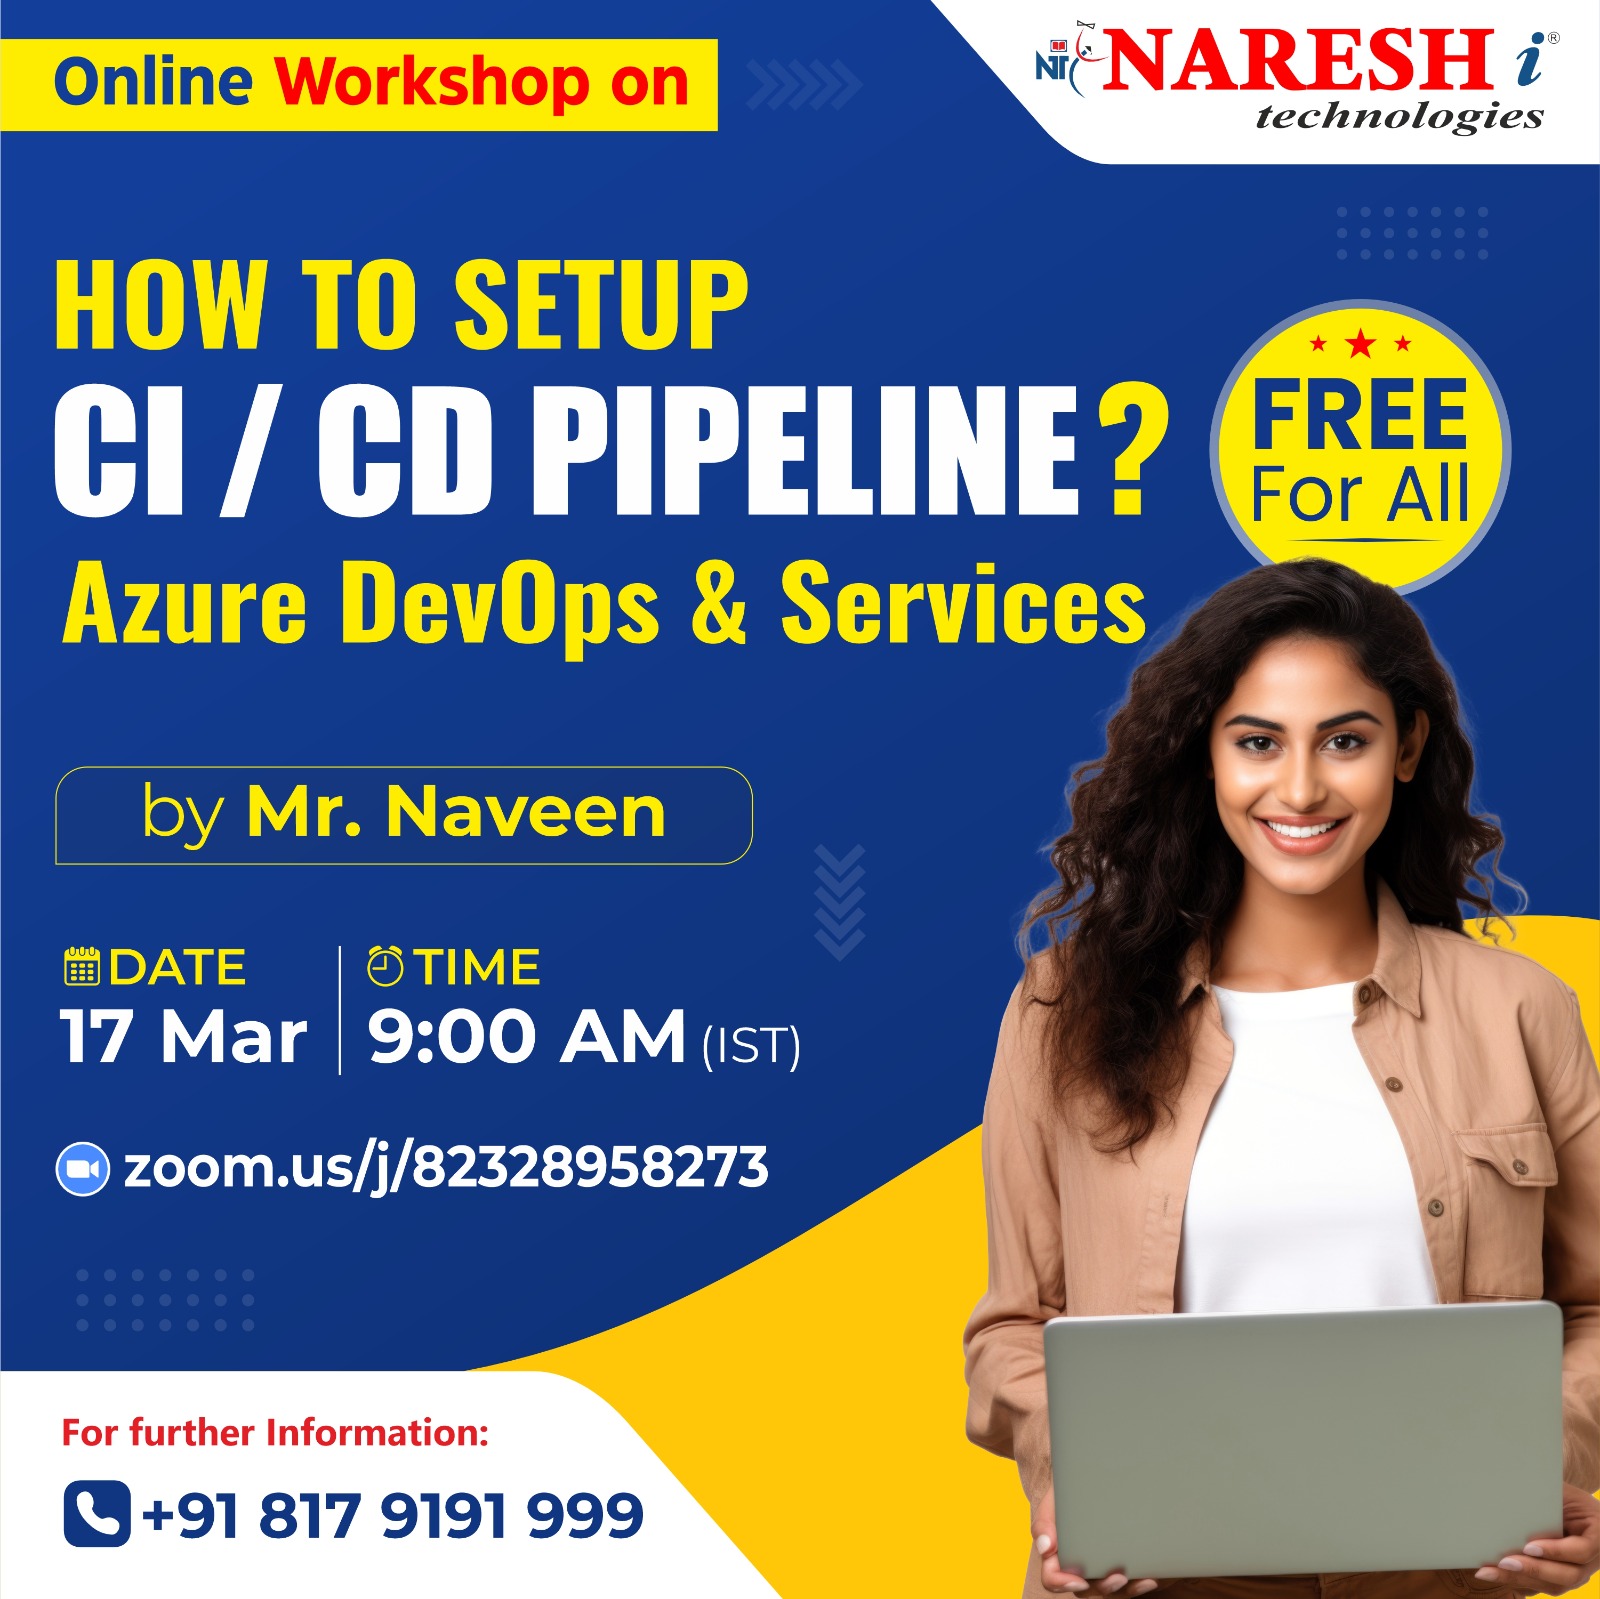 Free Workshop on Azure DevOps in NareshIT Hyderabad, Online Event